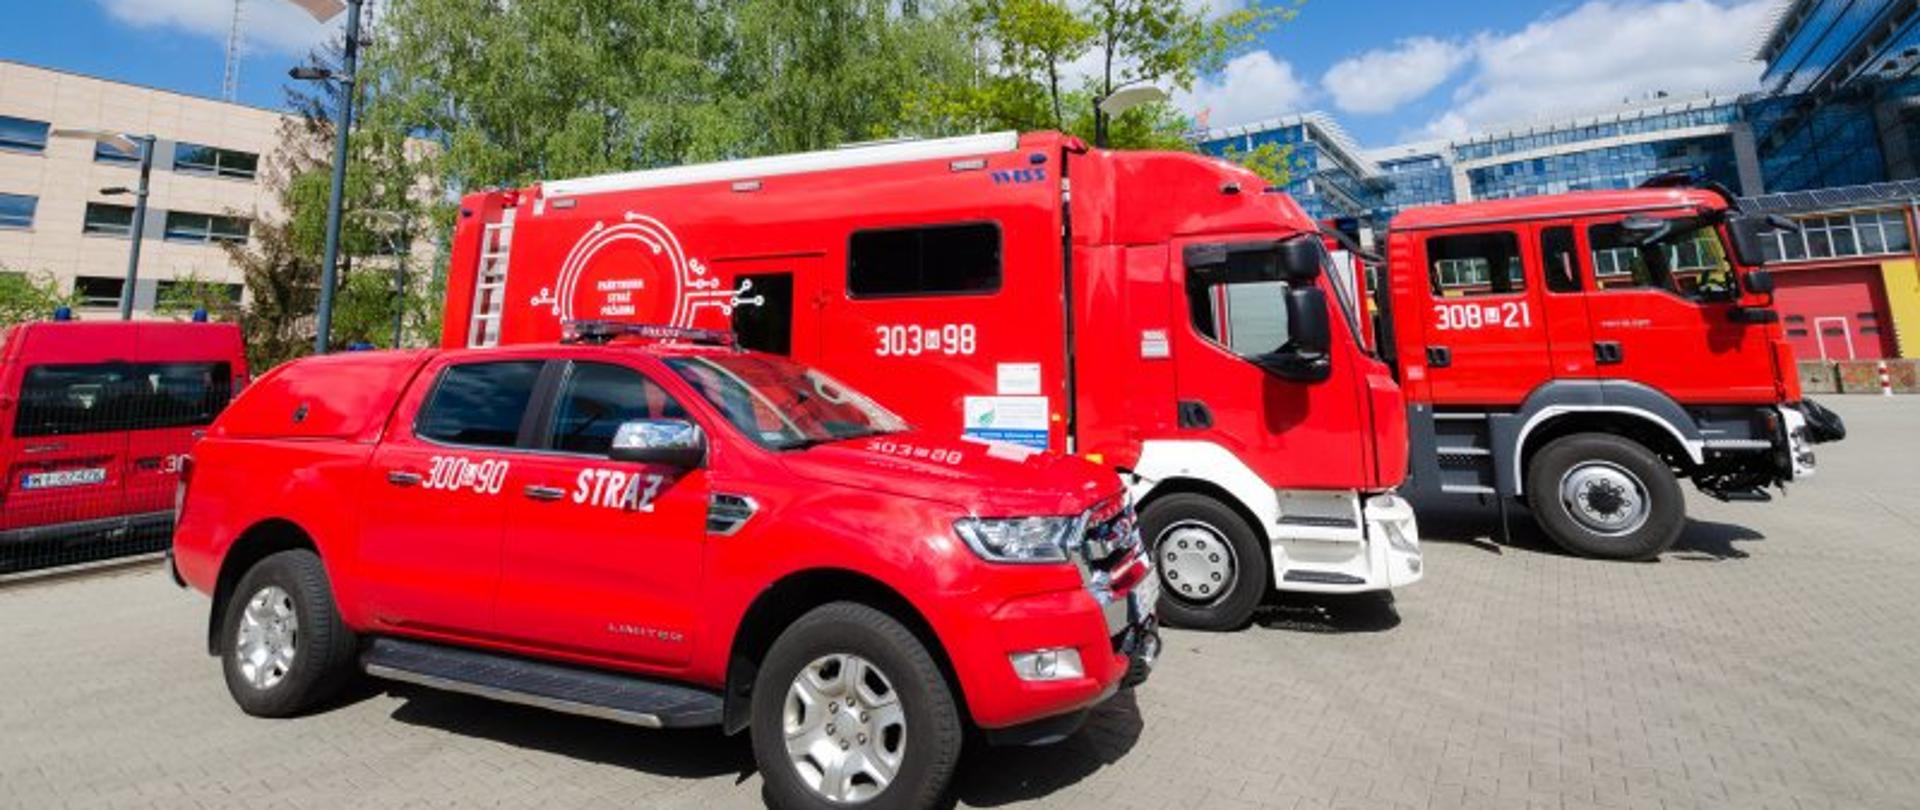 W ramach projektów unijnych PSP pozyskuje kolejne potężne środki – na zdjęciu trzy samochody strażackie. W tle garaże strażackie.